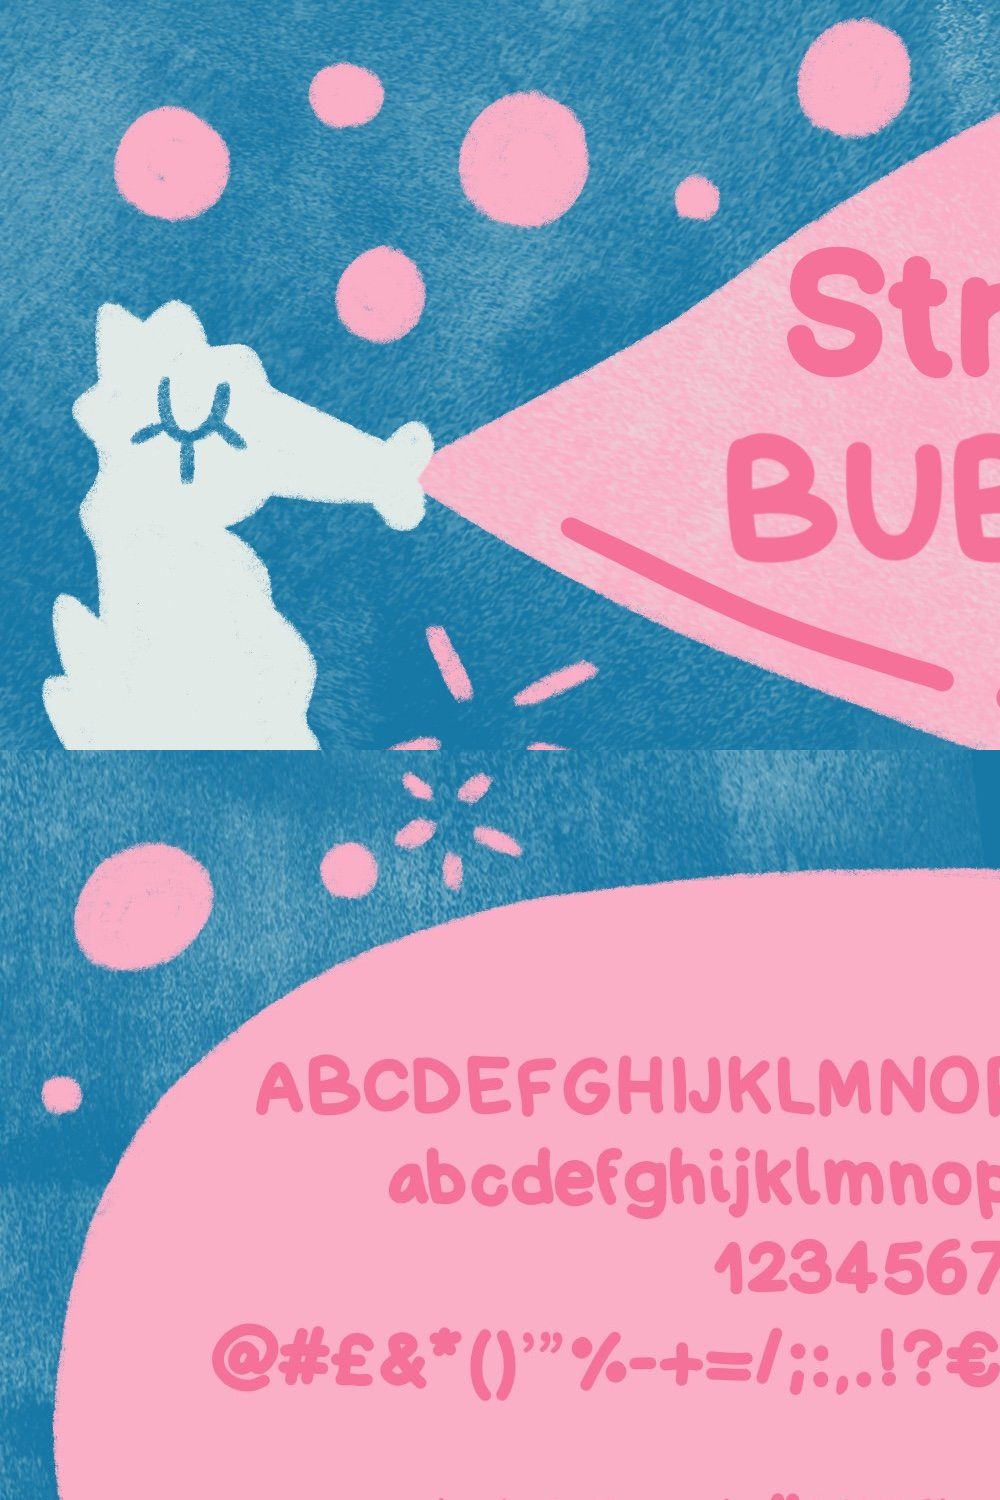 Strawberry Bubblegum font pinterest preview image.